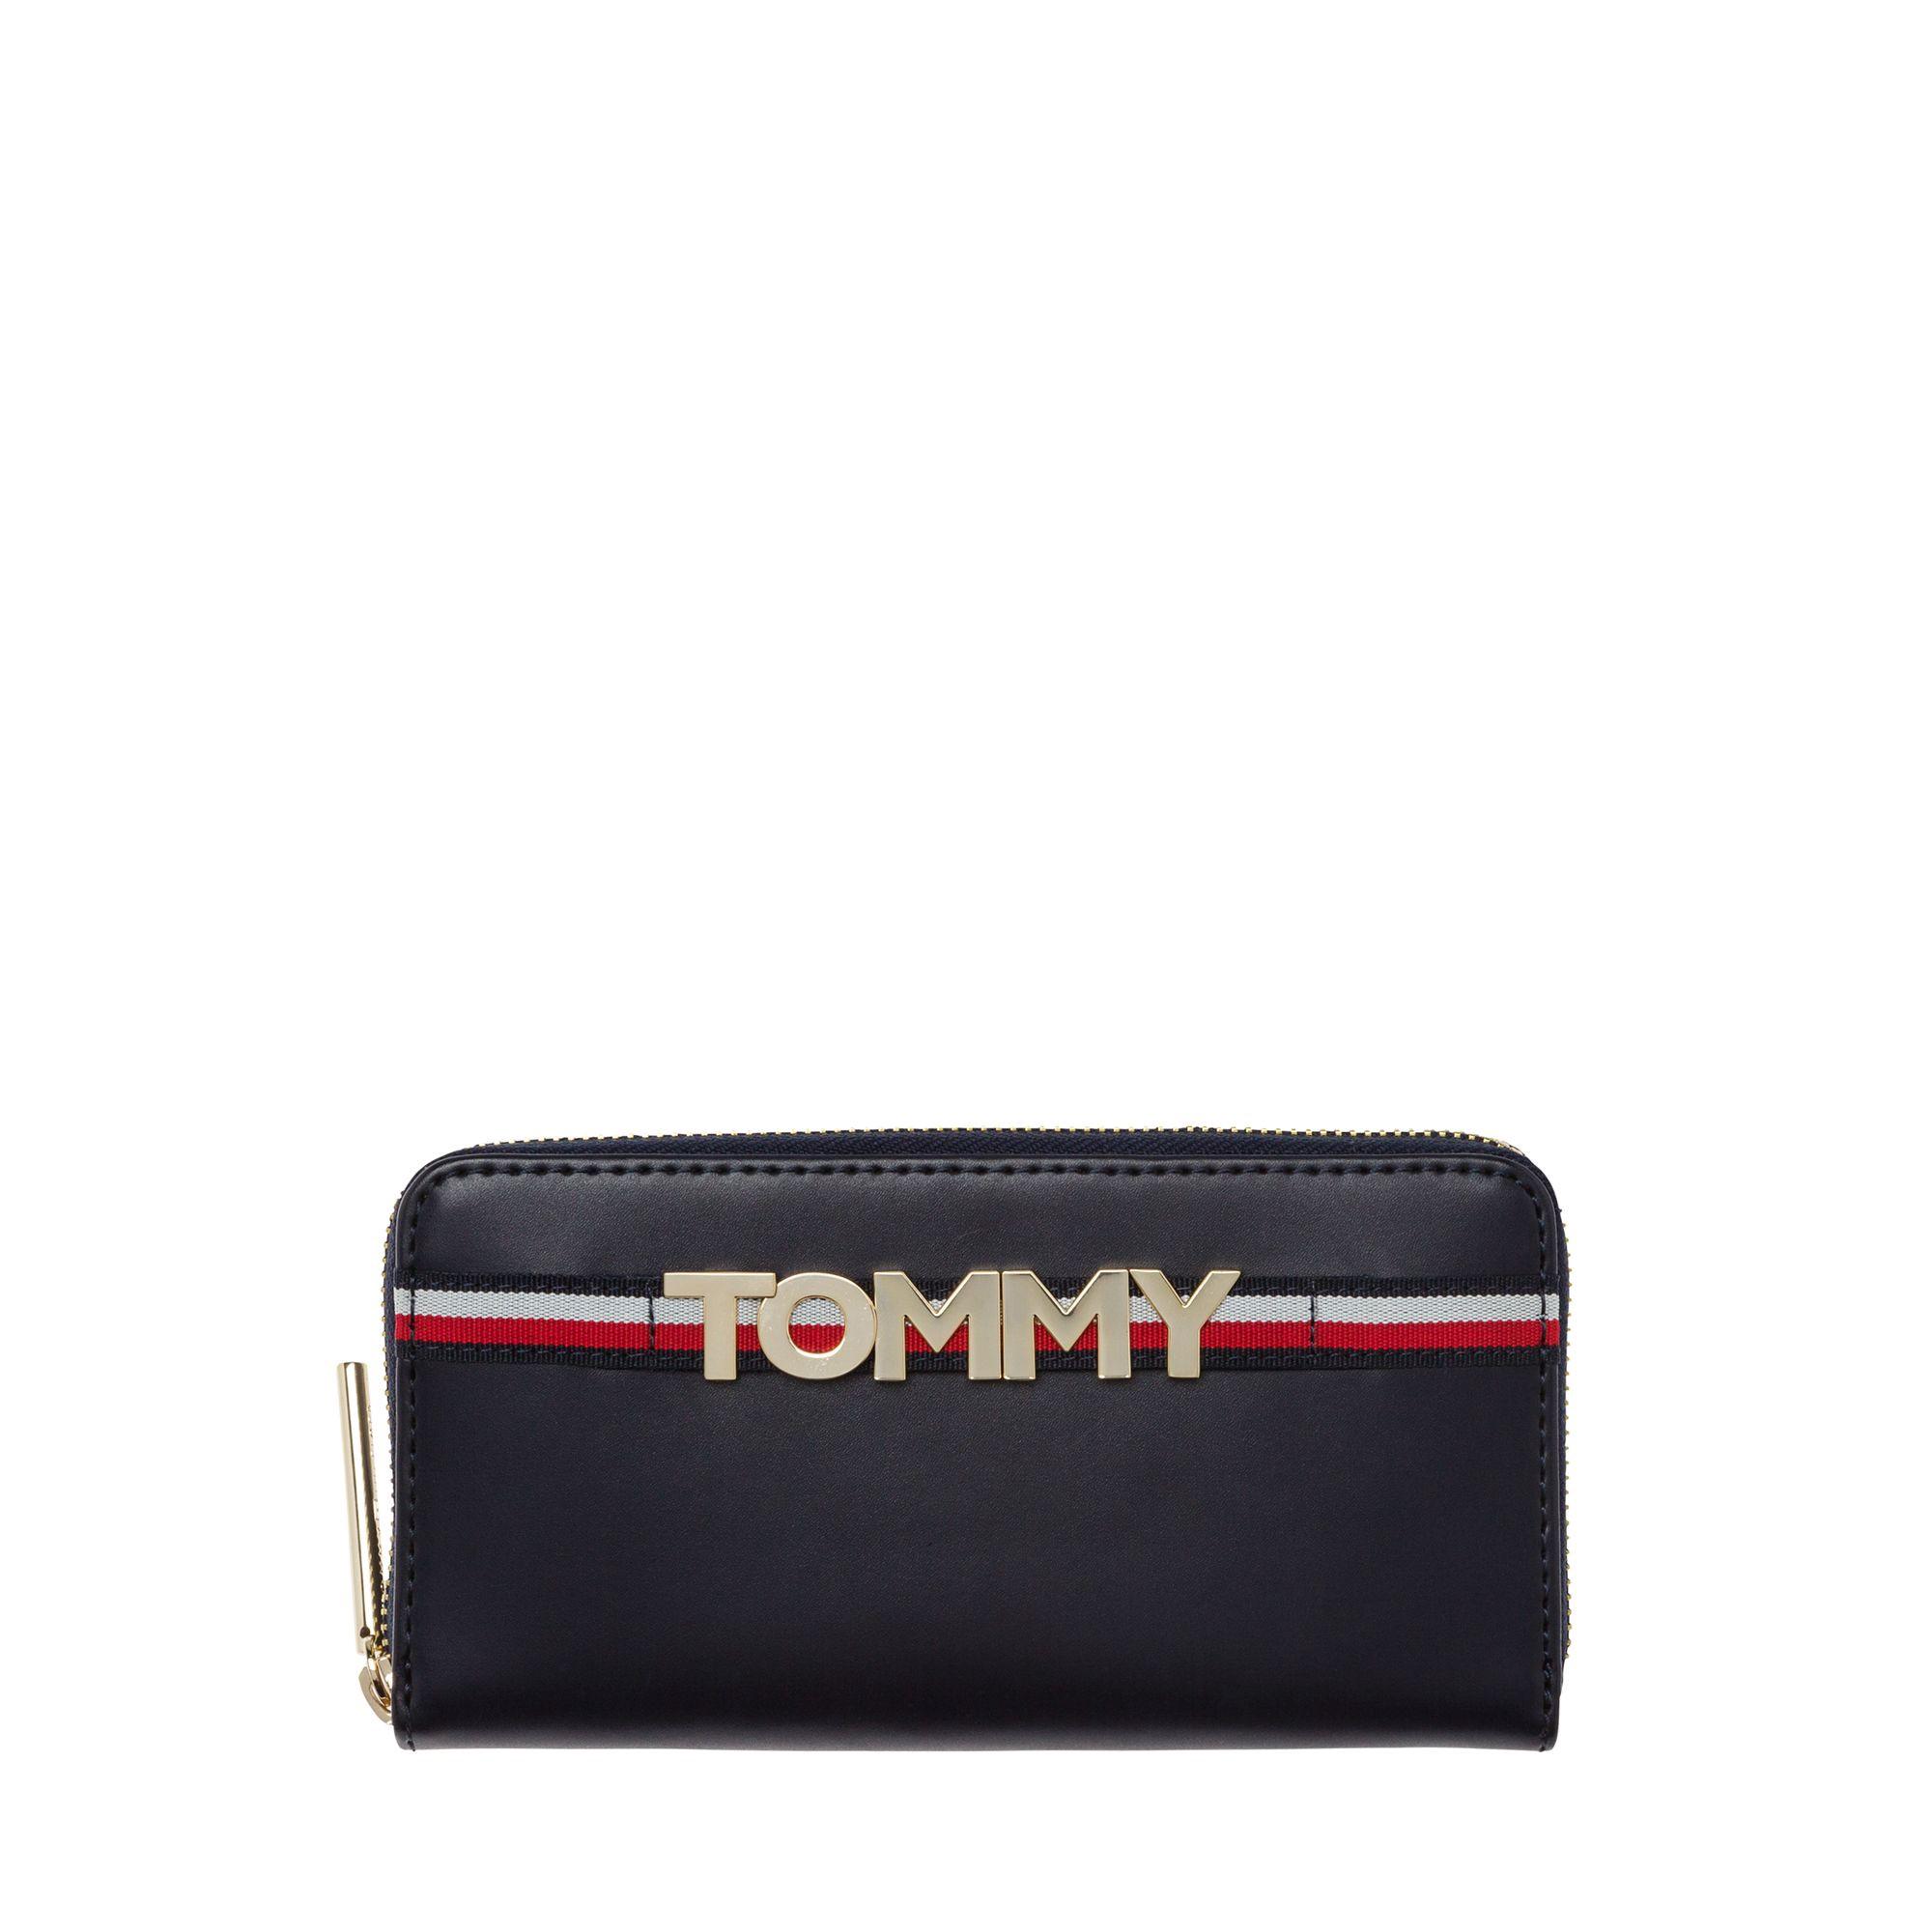 tommy wallet sale